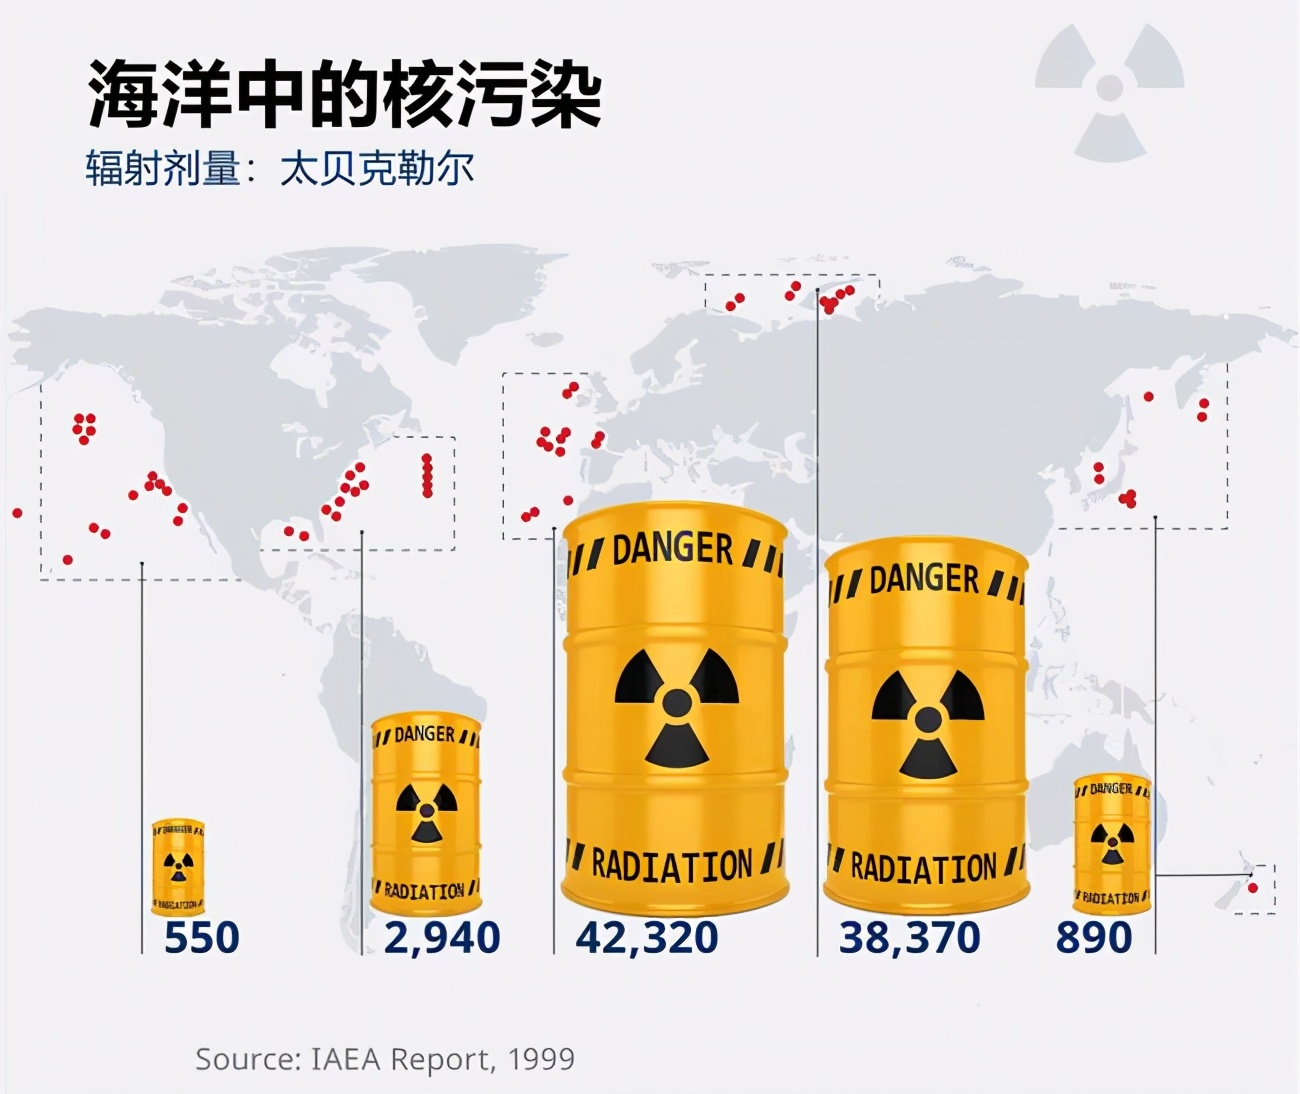 日本核废水确定入海 西方国家先沉默后支持 背后目的意味深长 地理那些事 Mdeditor